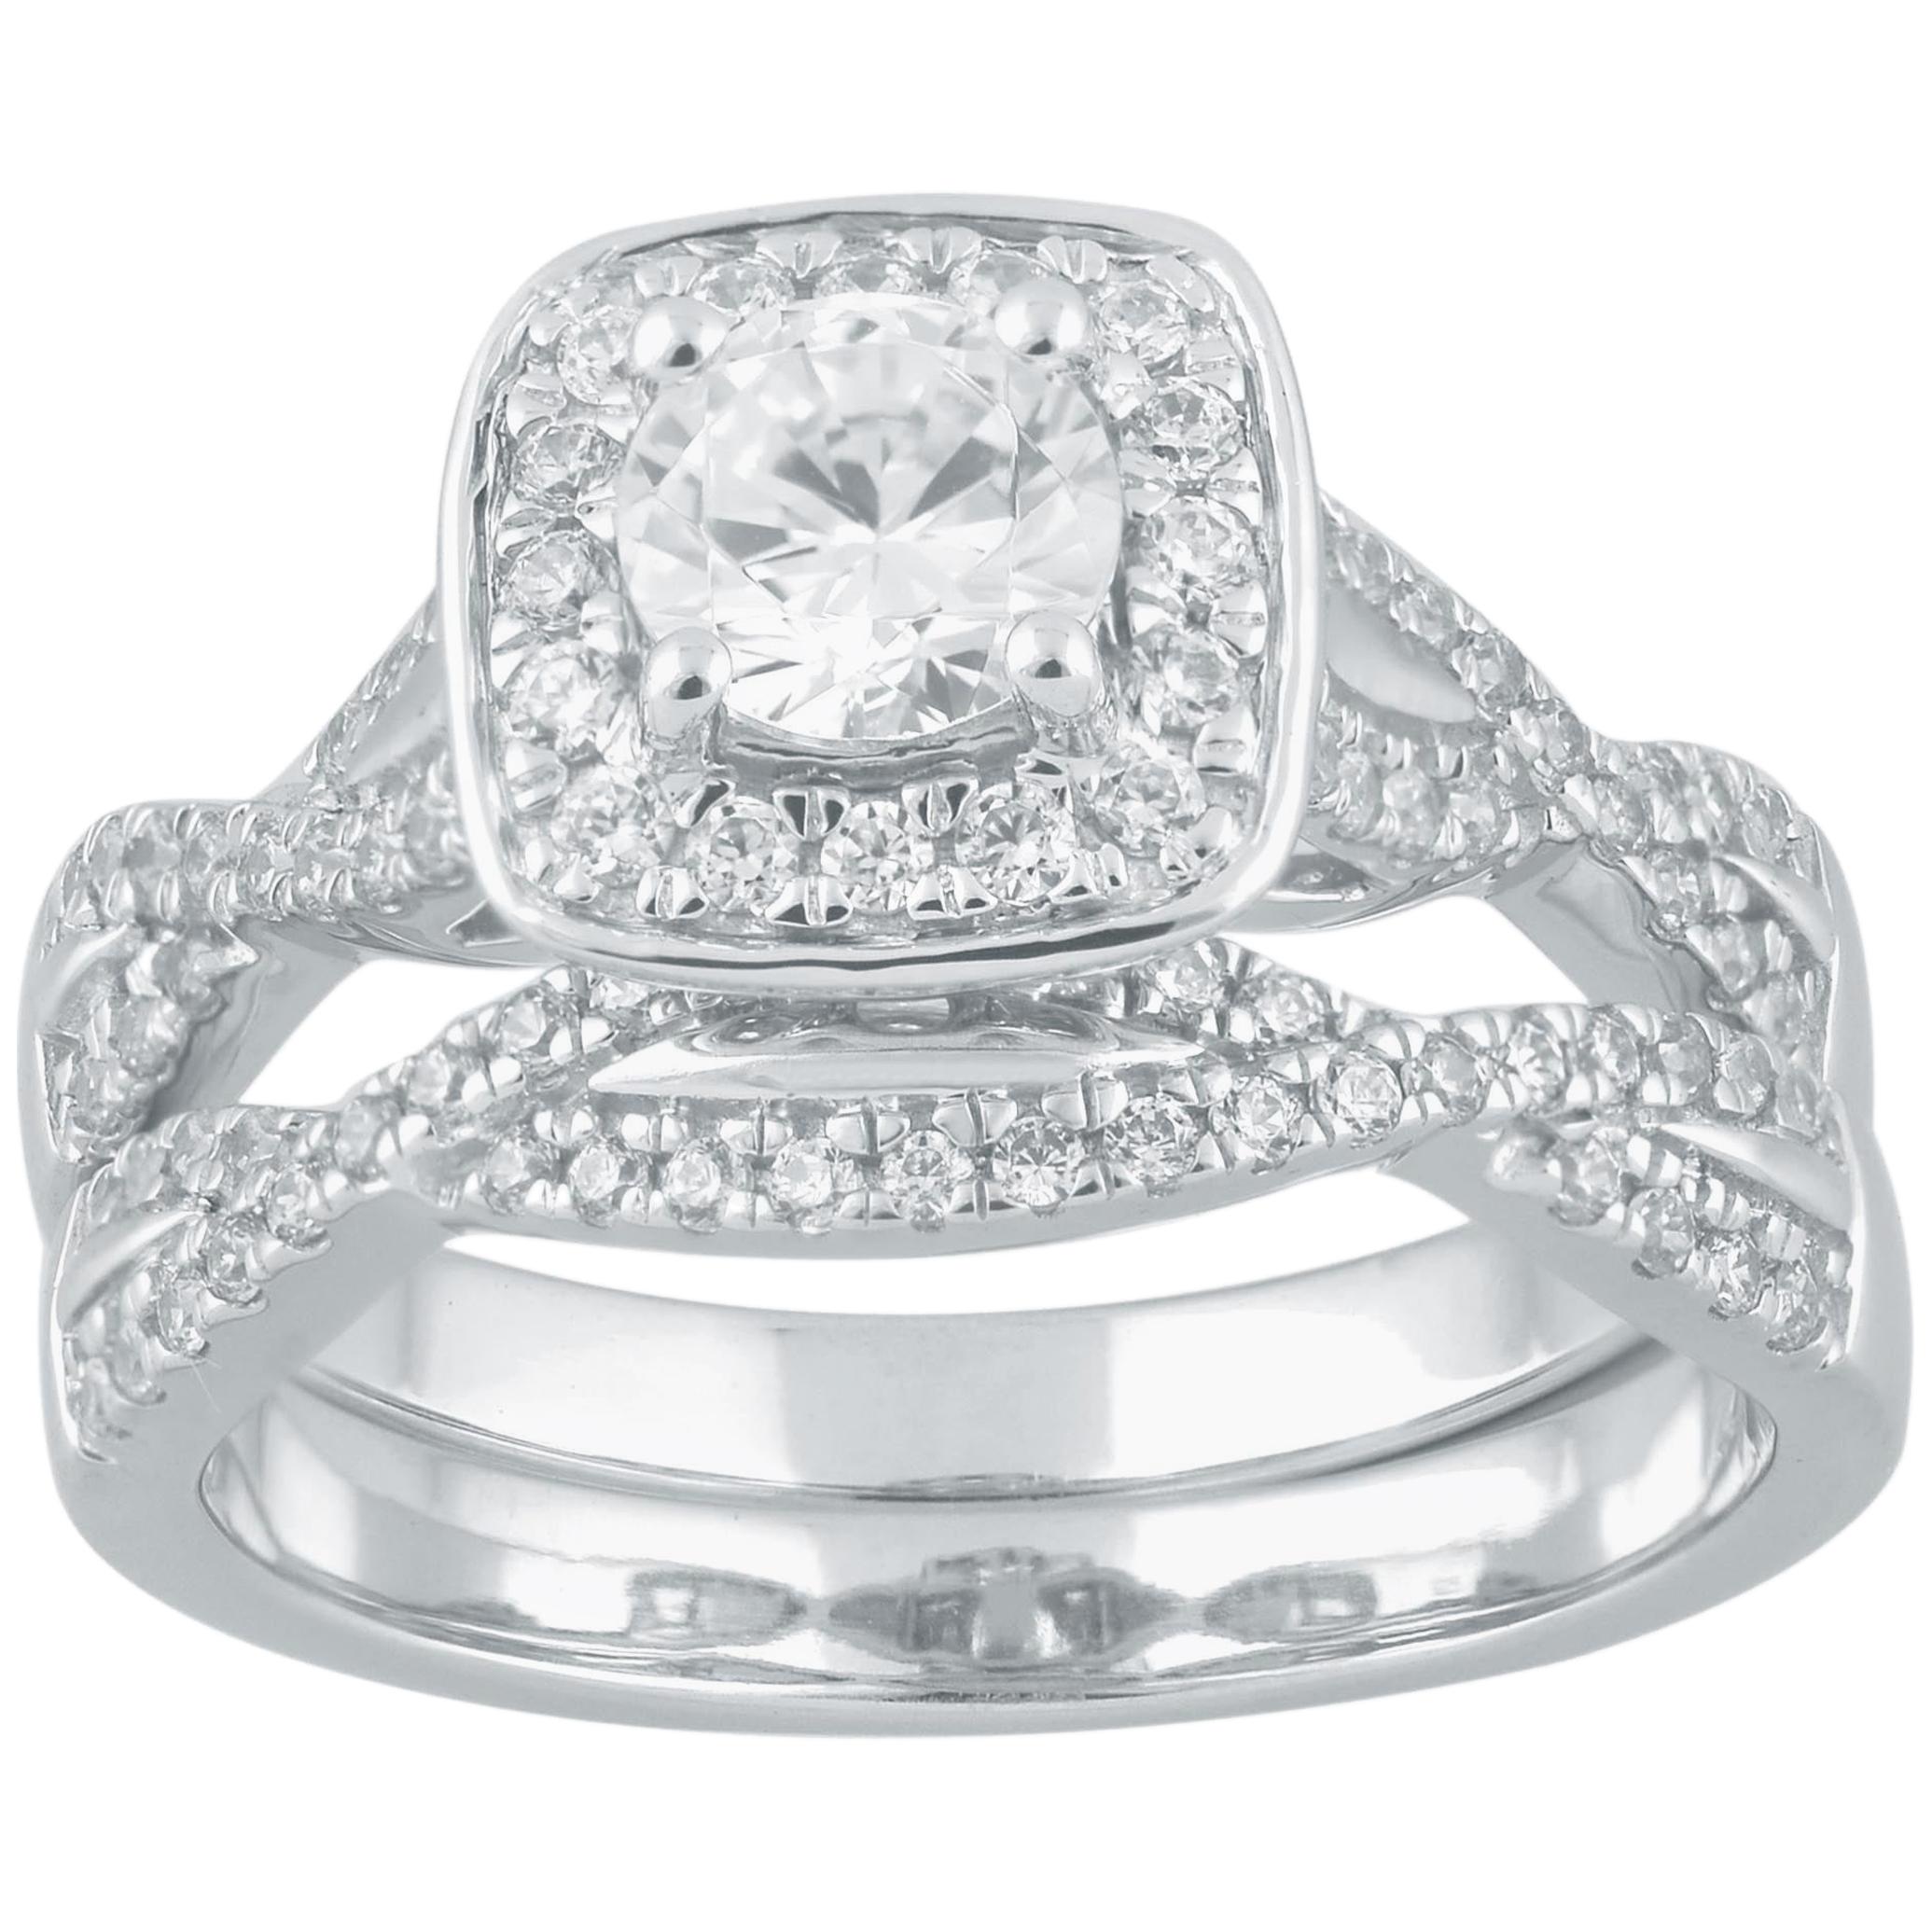 TJD 1.00 Carat Round Diamond 18 Karat White Gold Twisted Shank Bridal Ring Set